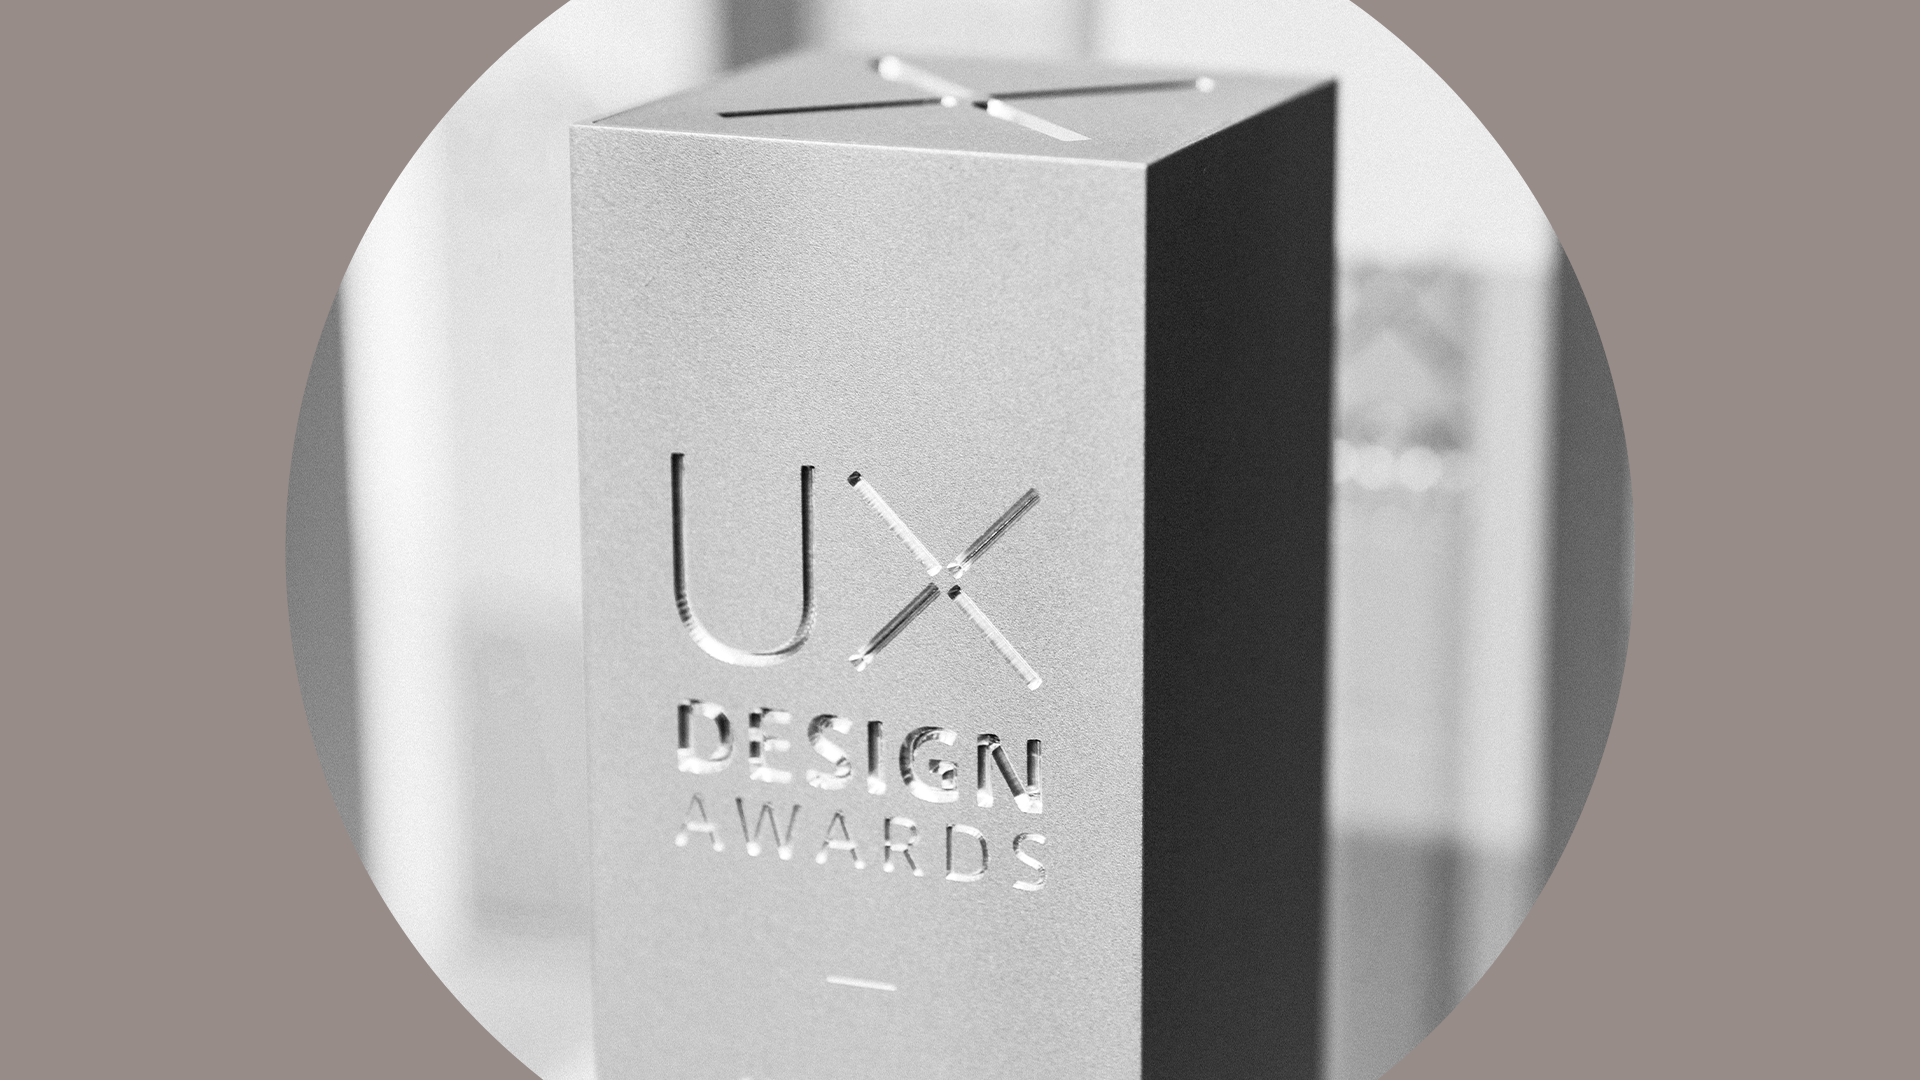 Über die UX Design Awards